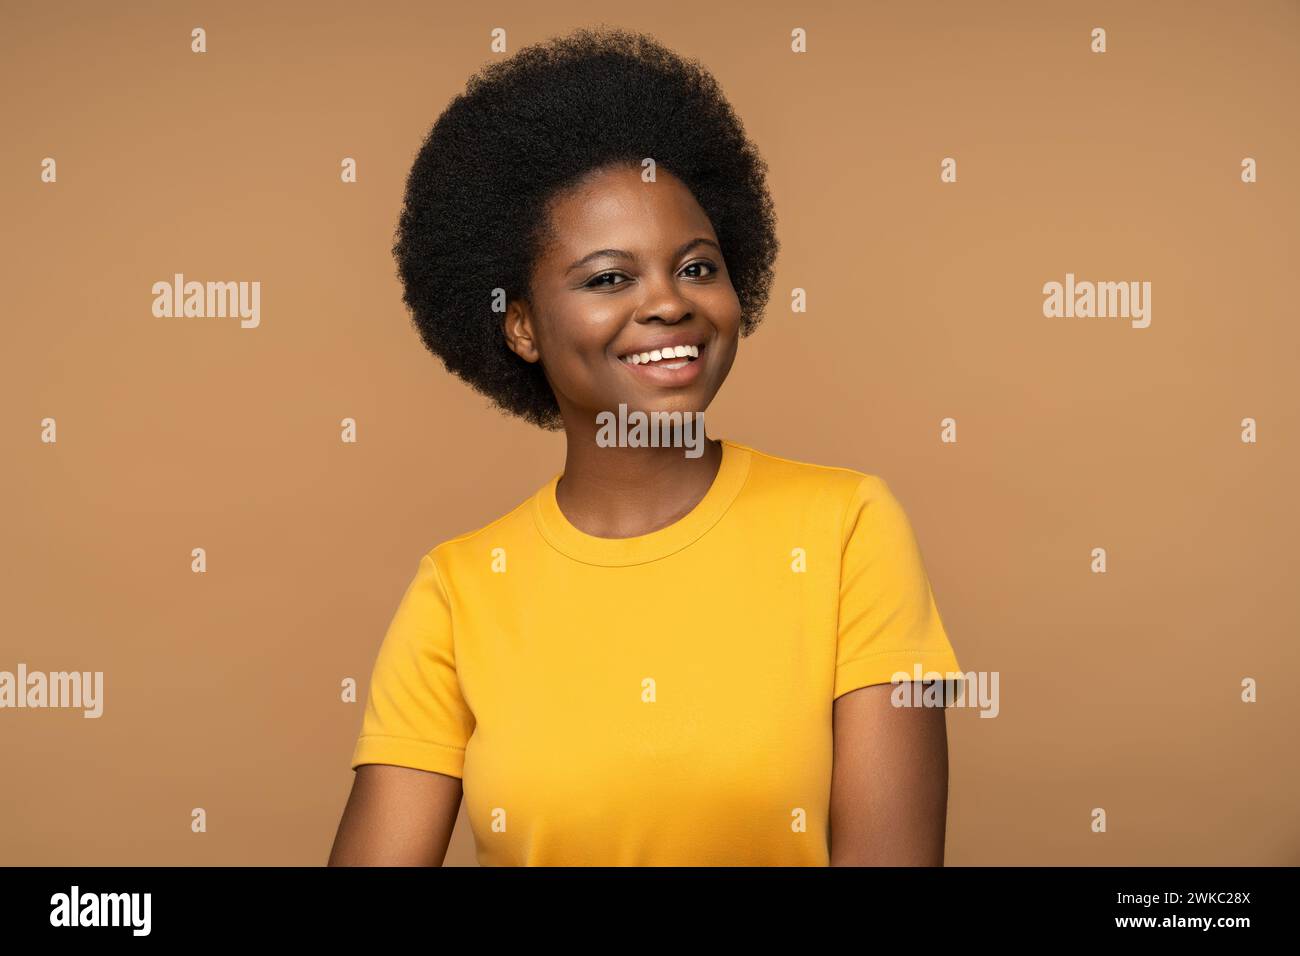 Donna nera allegra e sincera sorridente, guardando la macchina fotografica, isolata in camicia gialla su sfondo beige Foto Stock